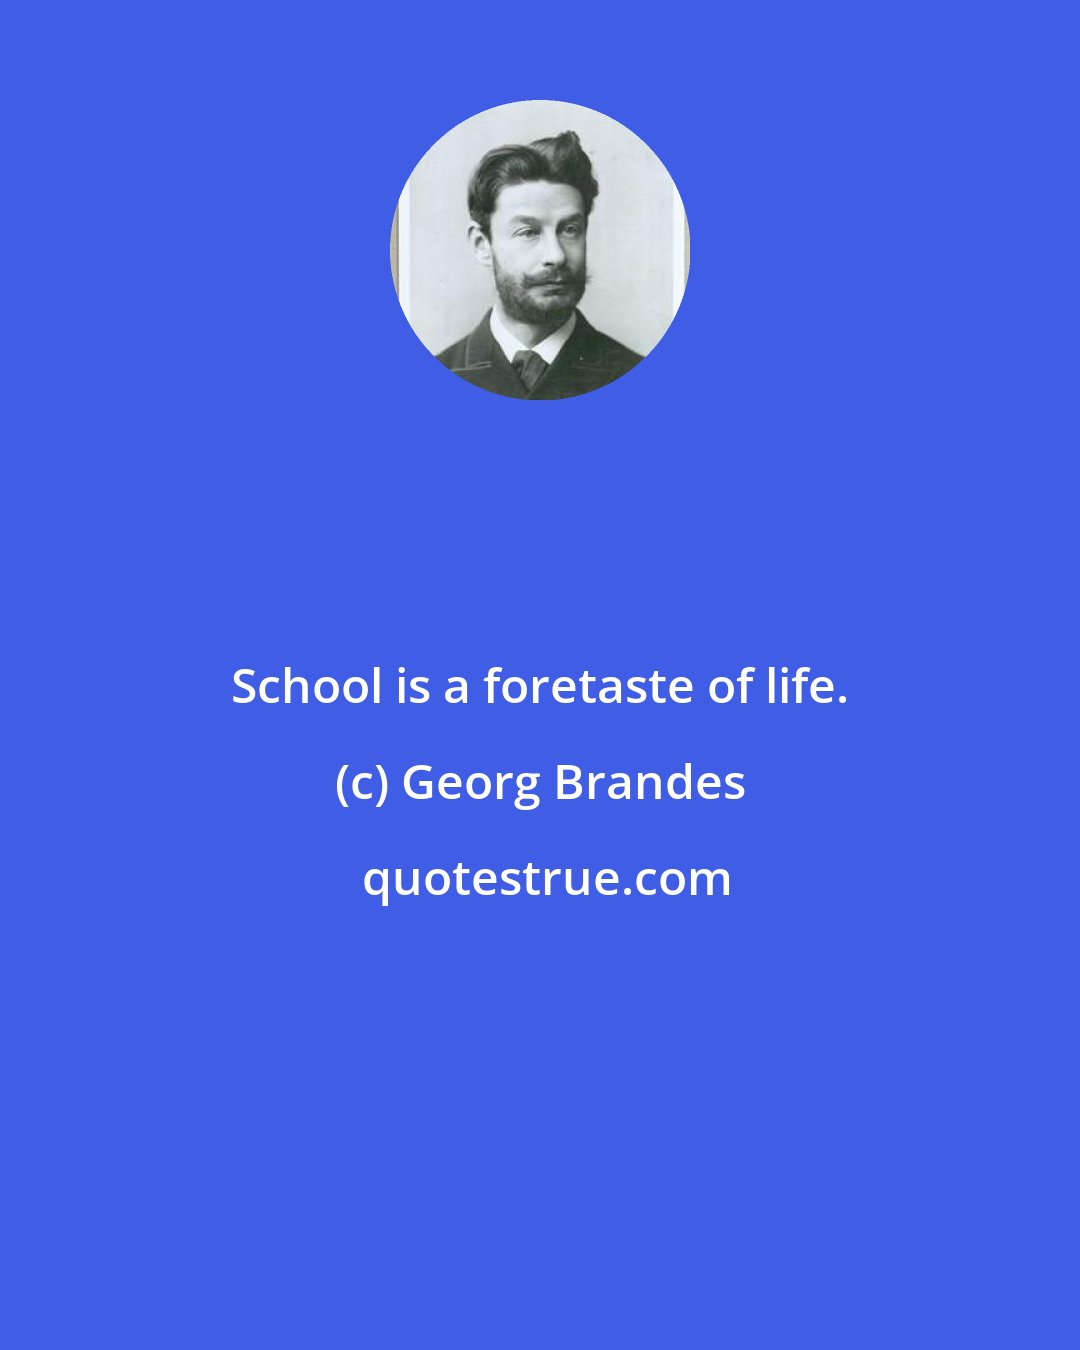 Georg Brandes: School is a foretaste of life.